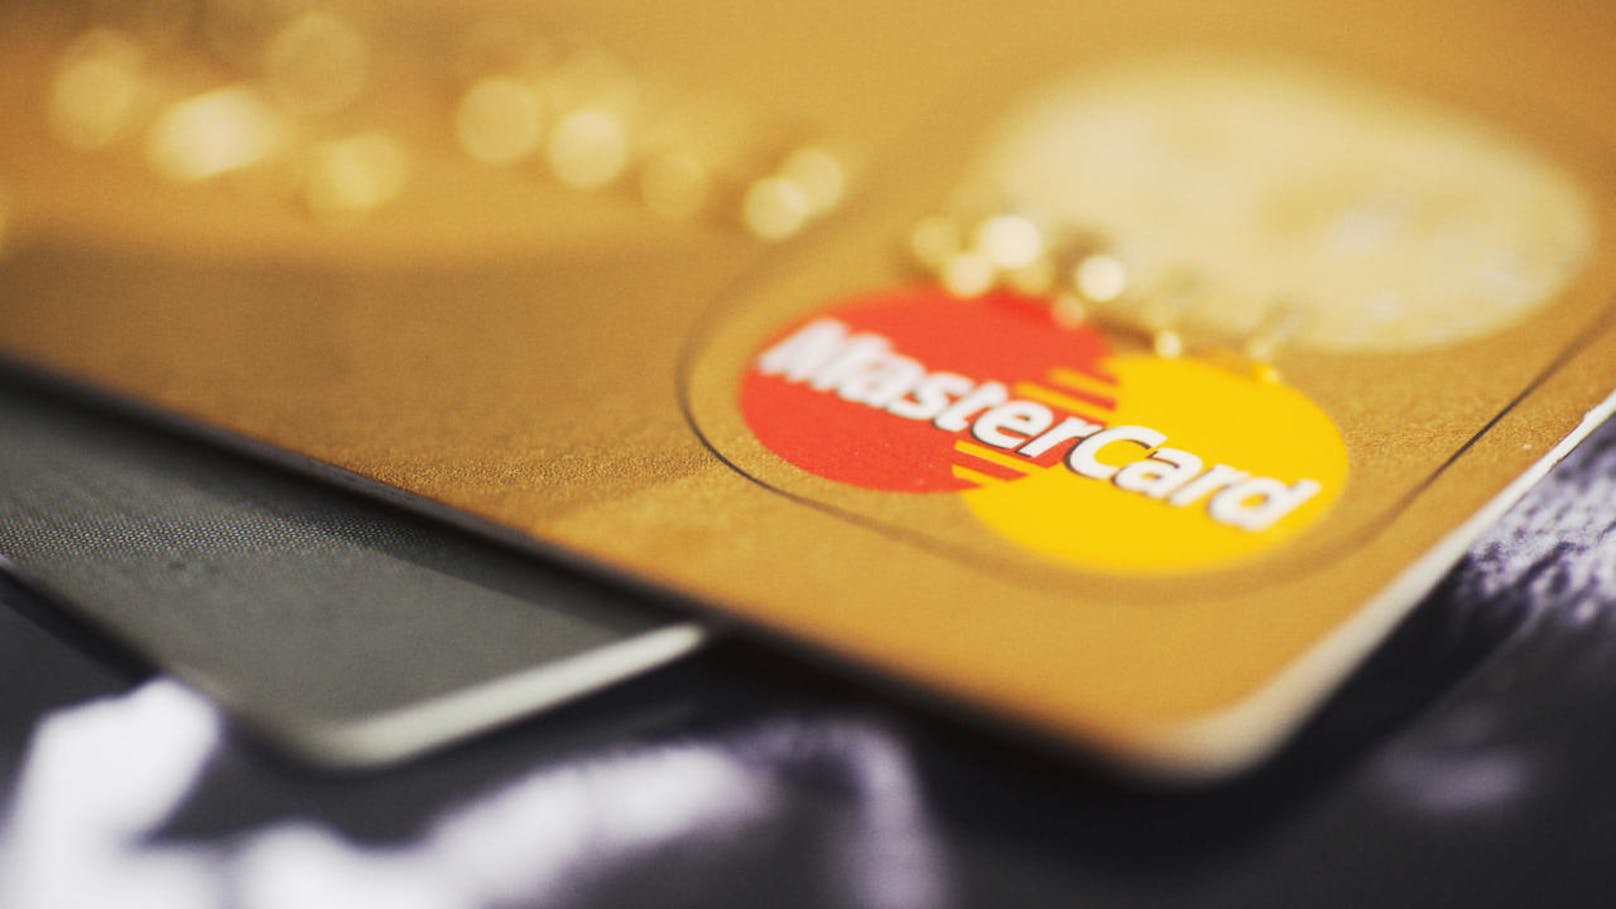 Bei Kunden mit Mastercard-Karten gab es zahlreiche Probleme beim Bezahlen.